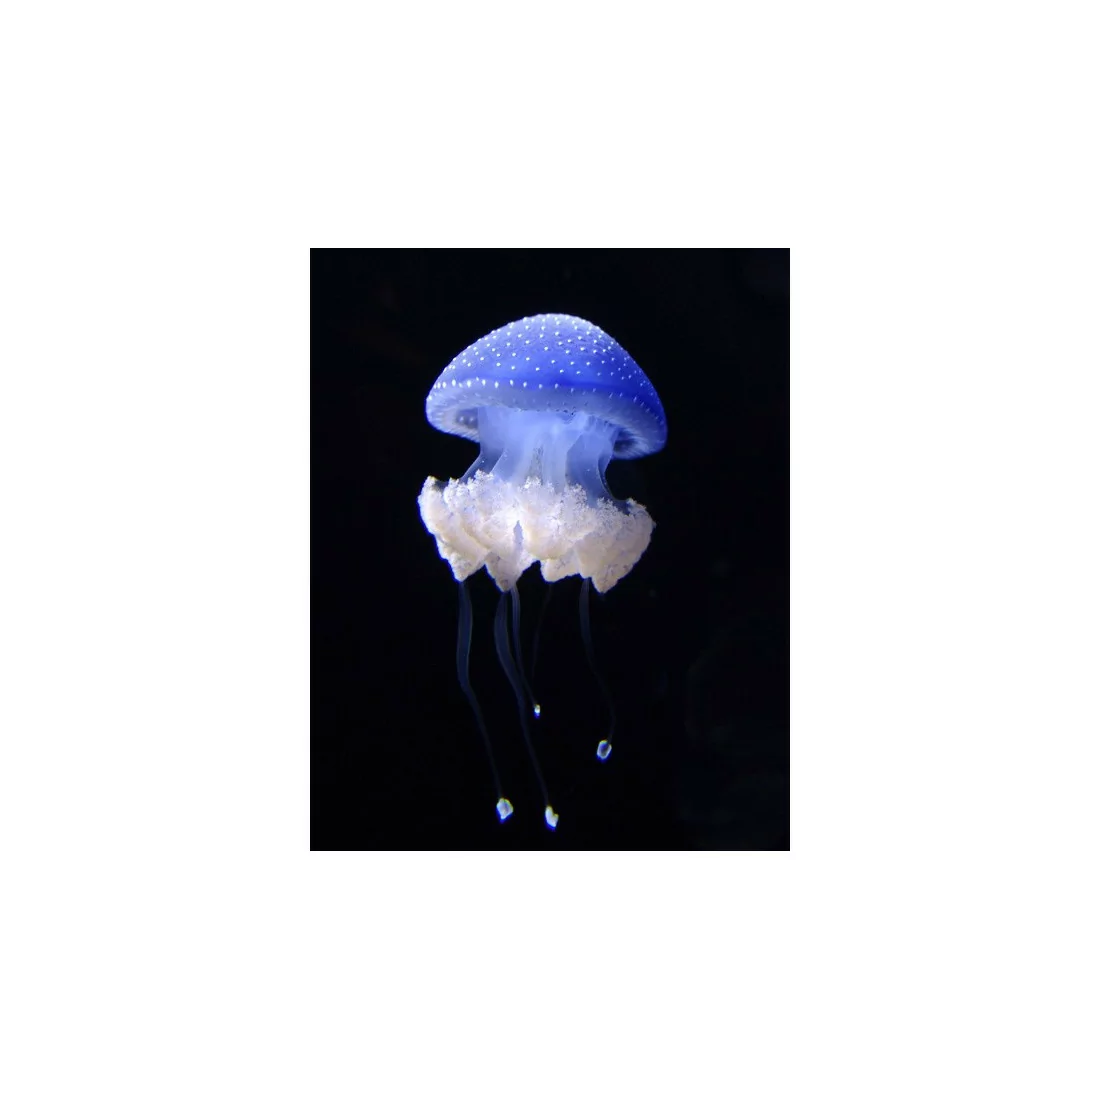 Phyllorhiza punctata jellyfish XS